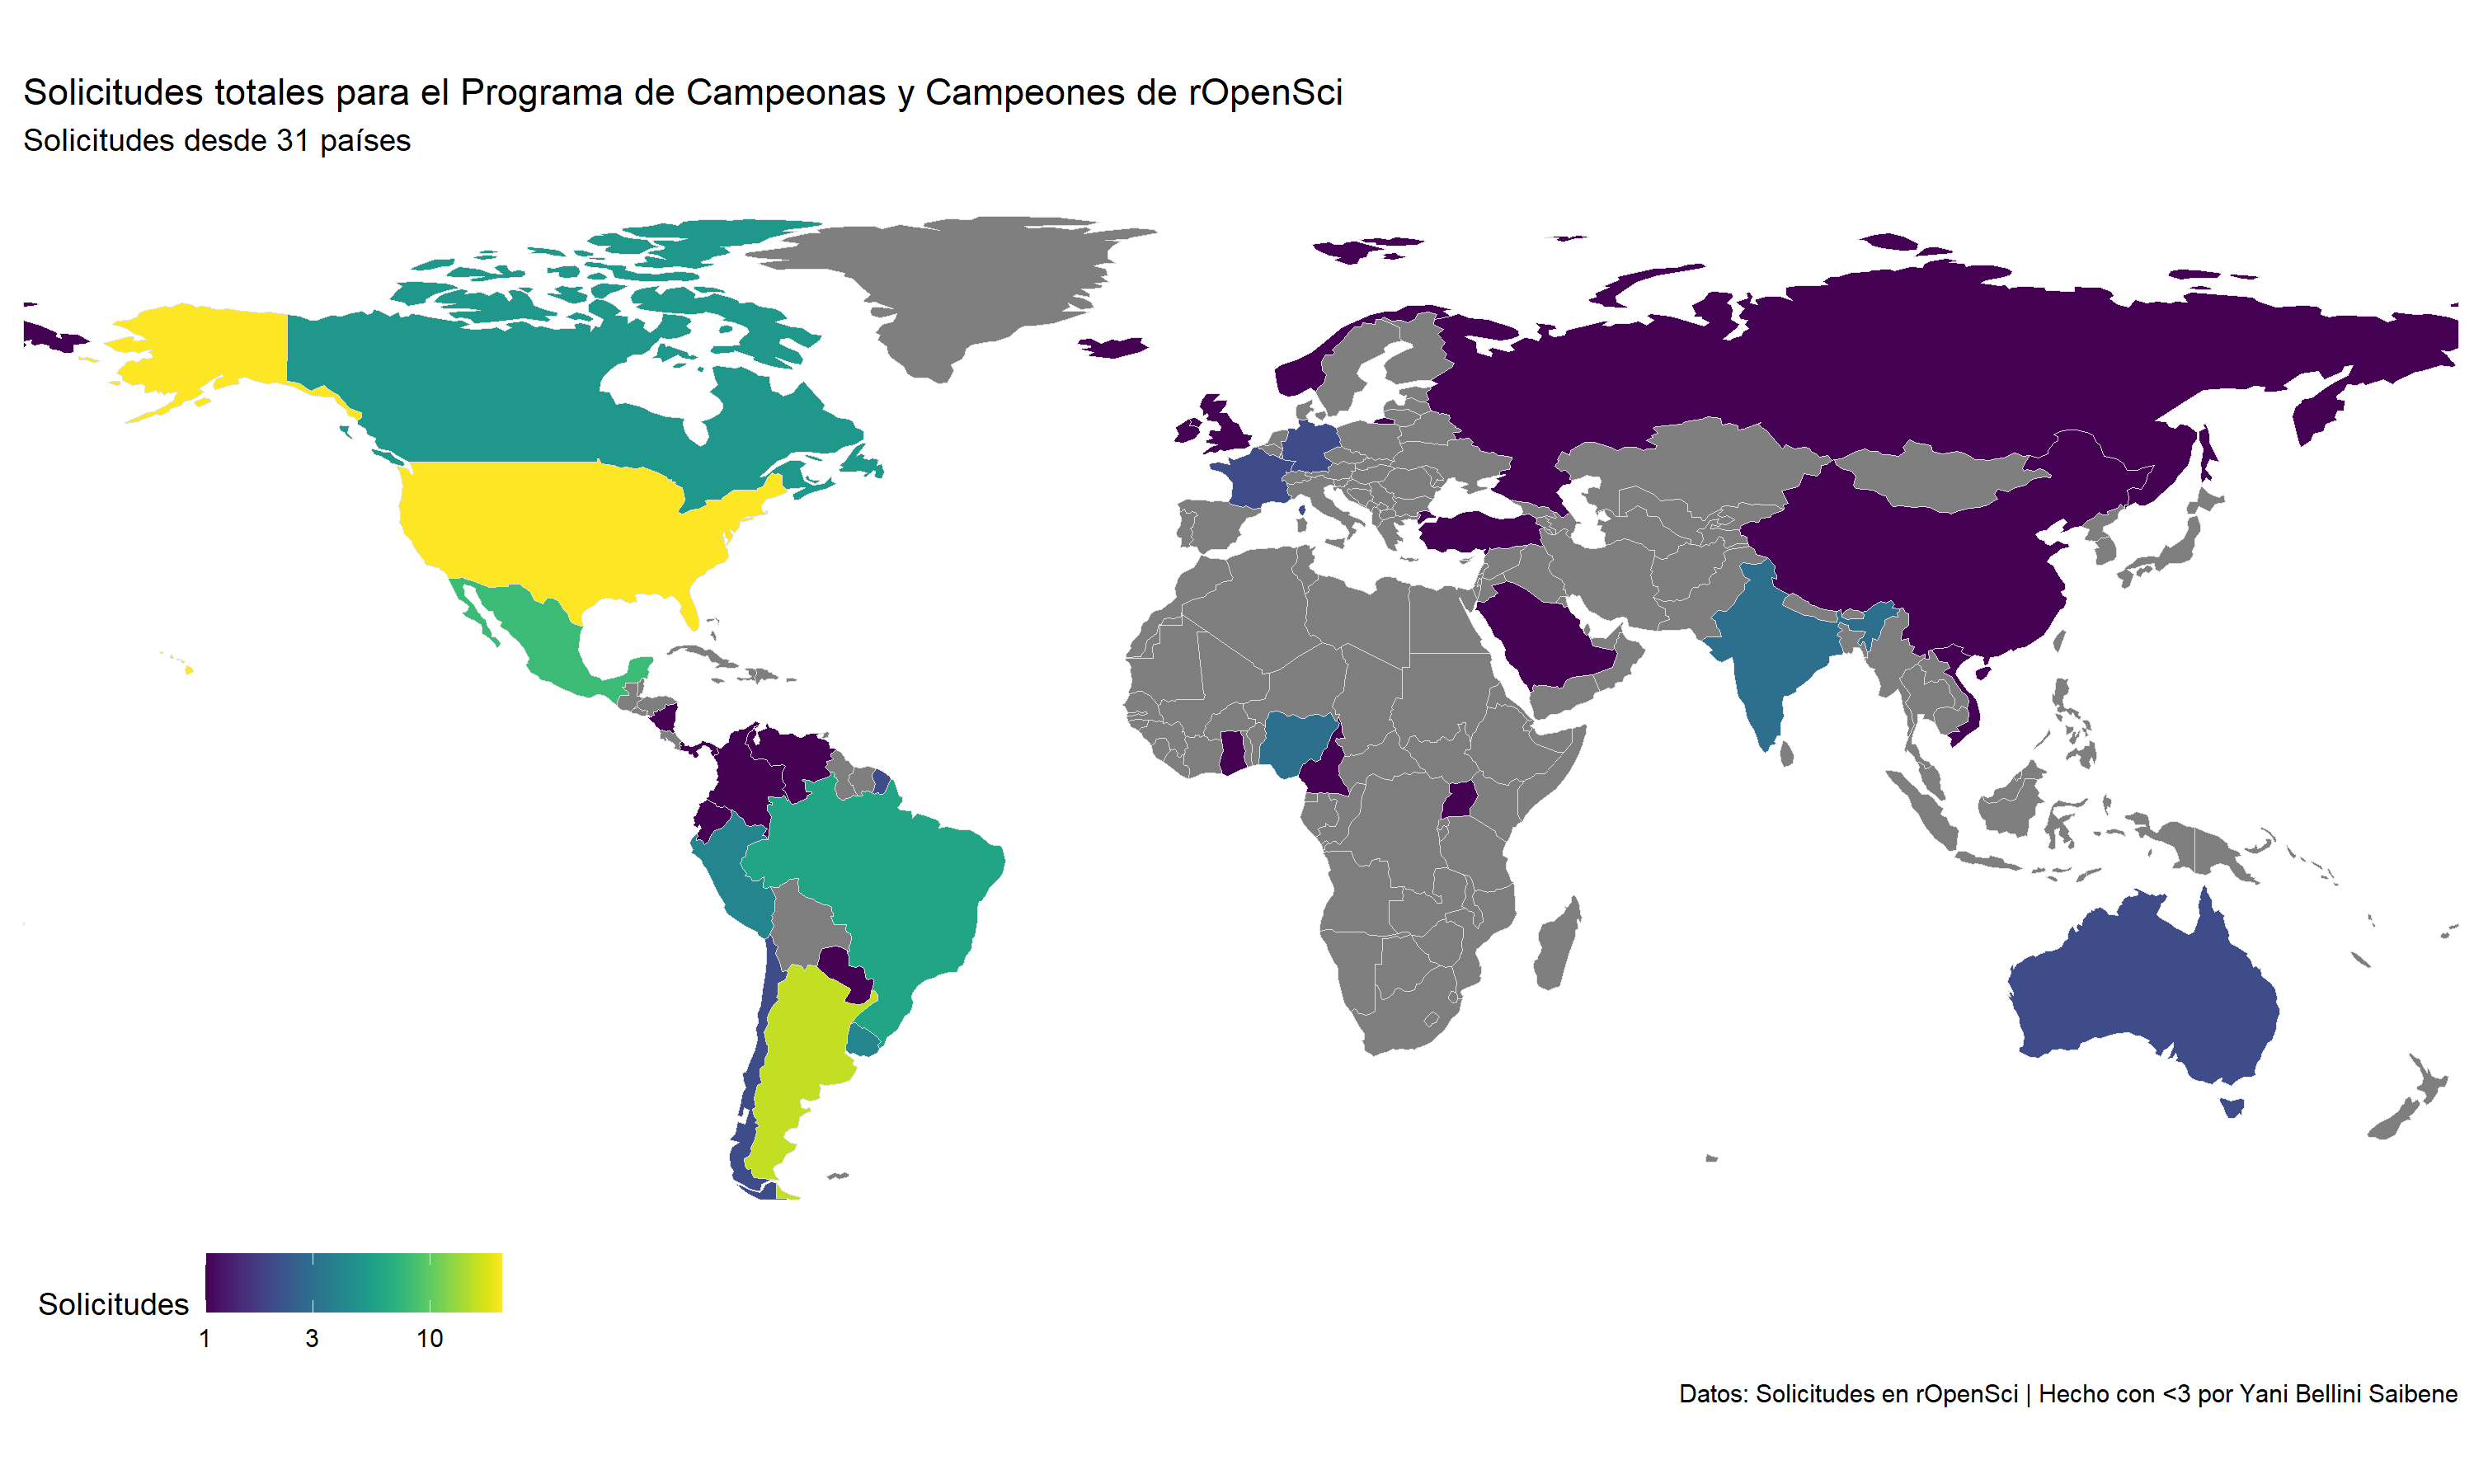 Mapa del mundo con los países coloreados según el número de solicitudes. Se muestran aplicaciones en América, Europa, Oceanía, Asia y África (en ese orden con respecto al número de solicitudes).